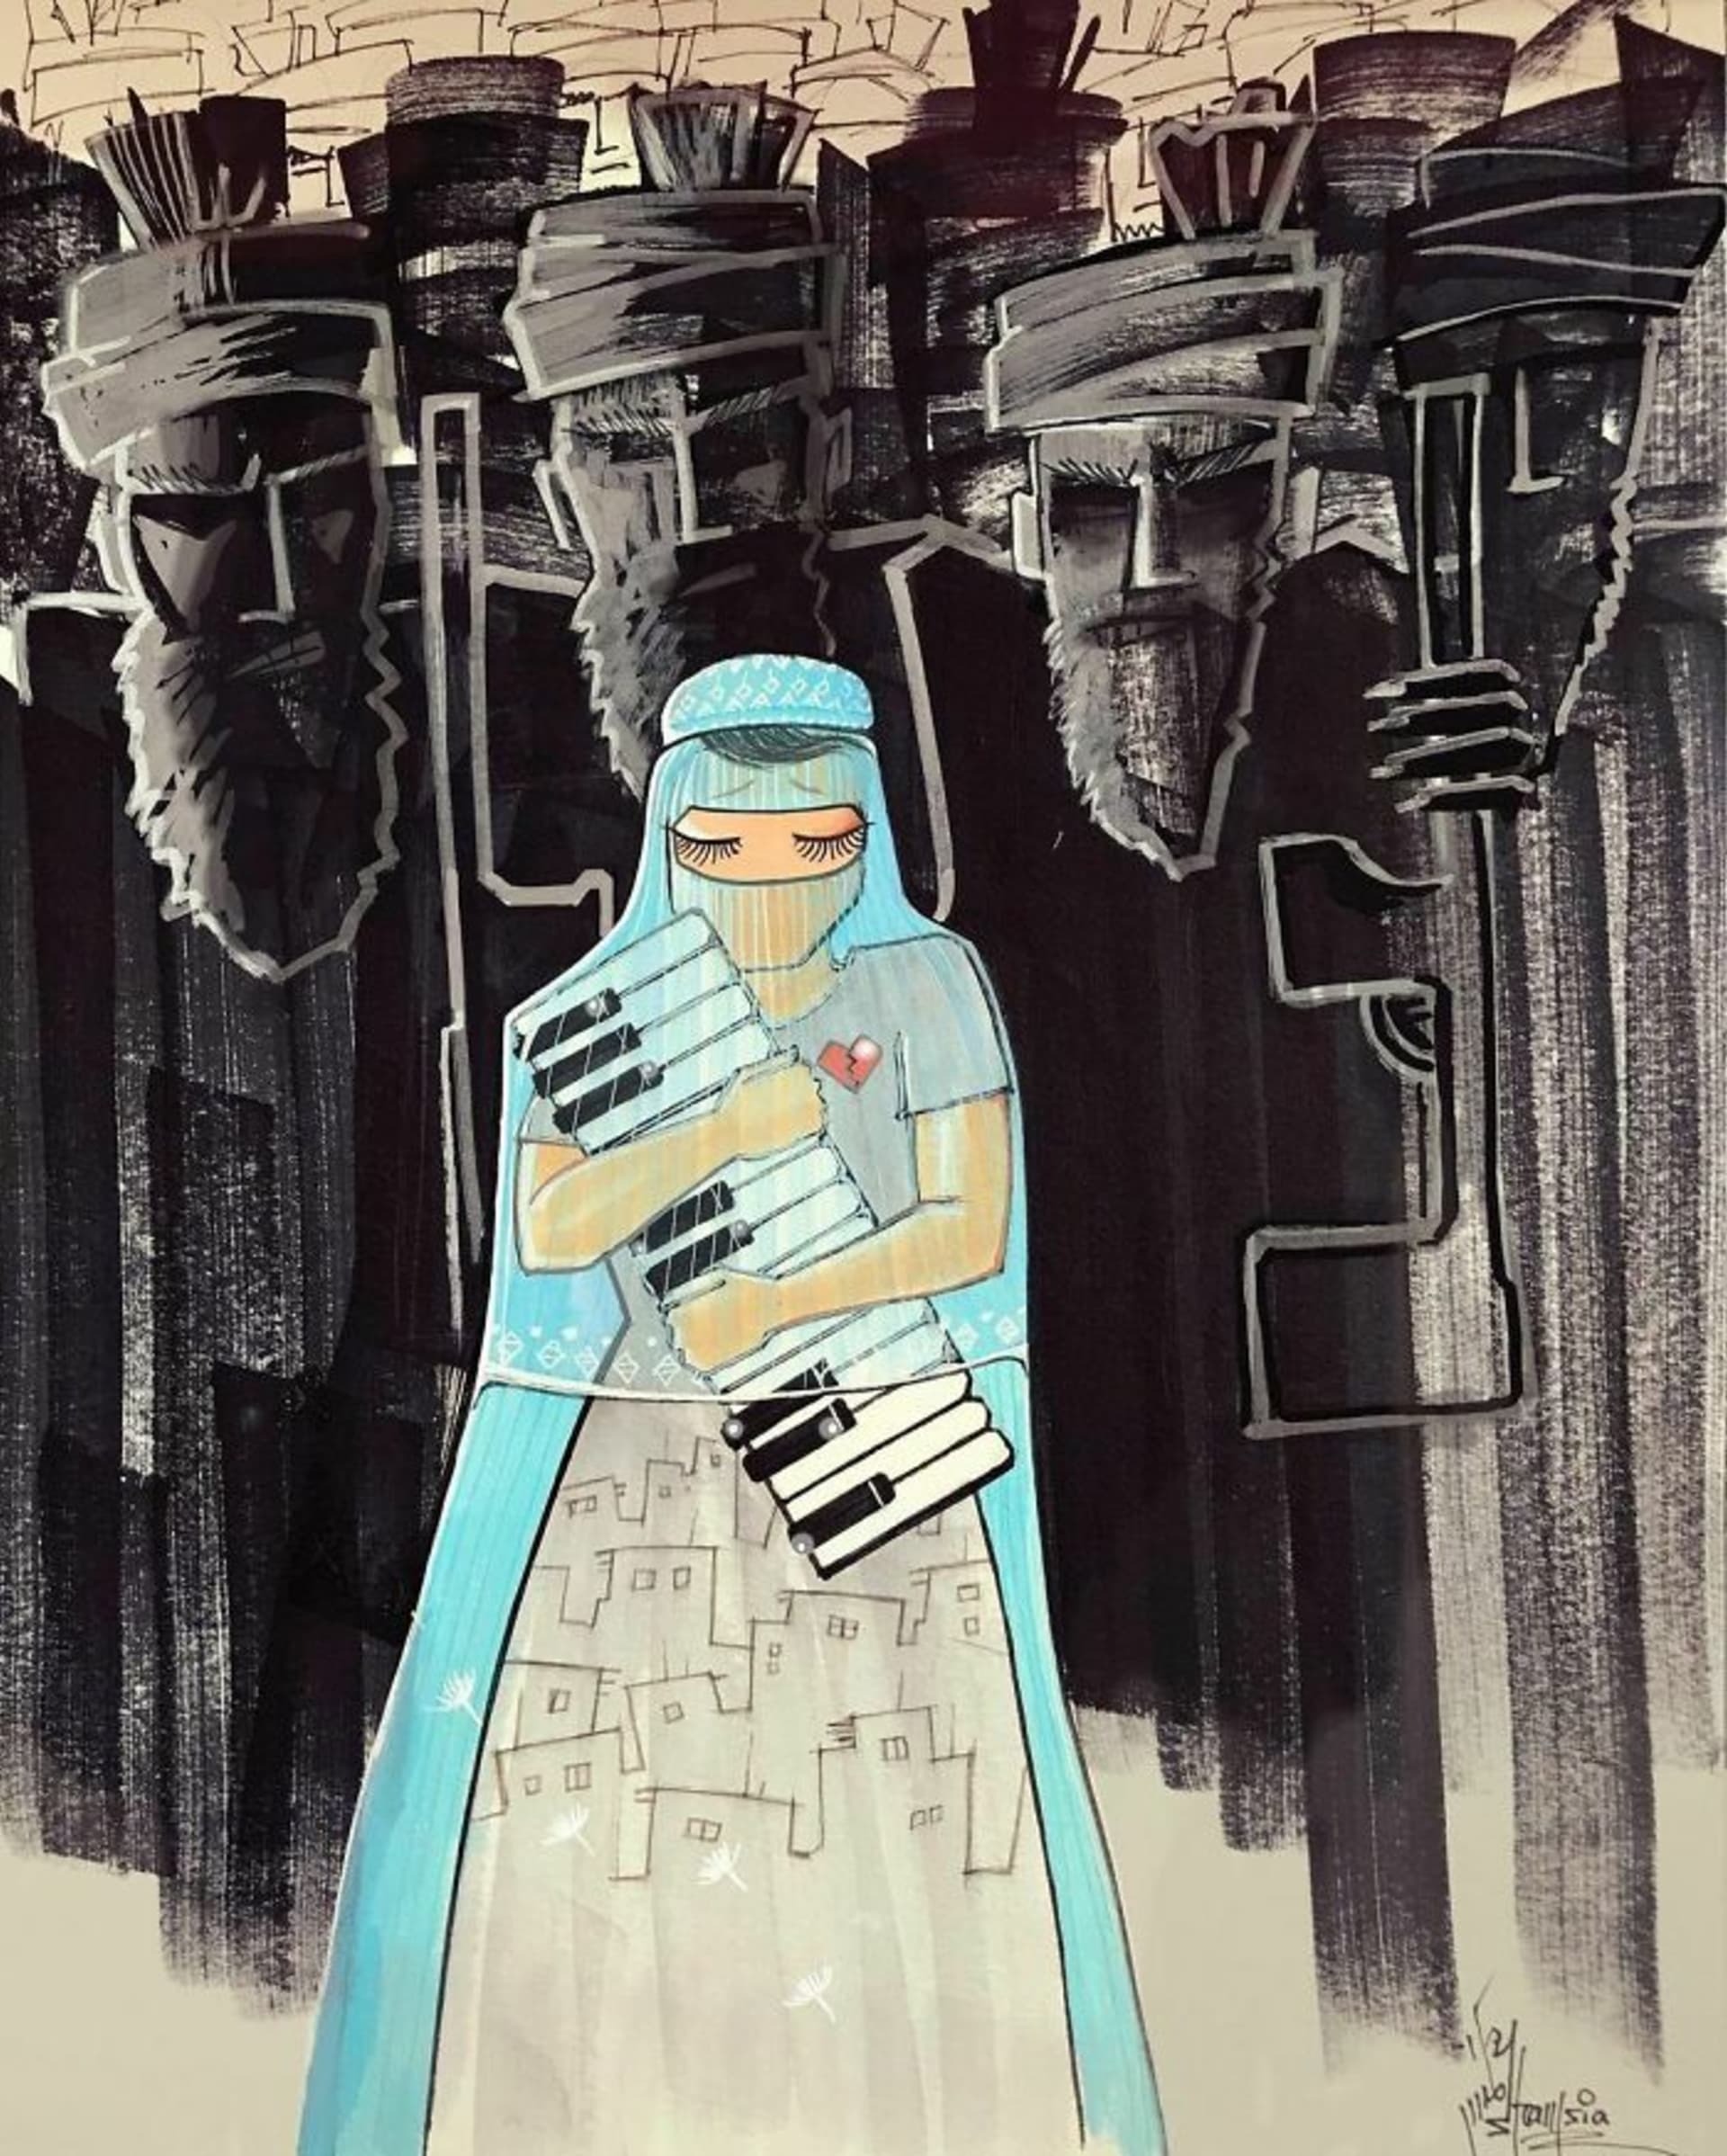 Graffiti afghánské umělkyně upozorňují na ženská práva